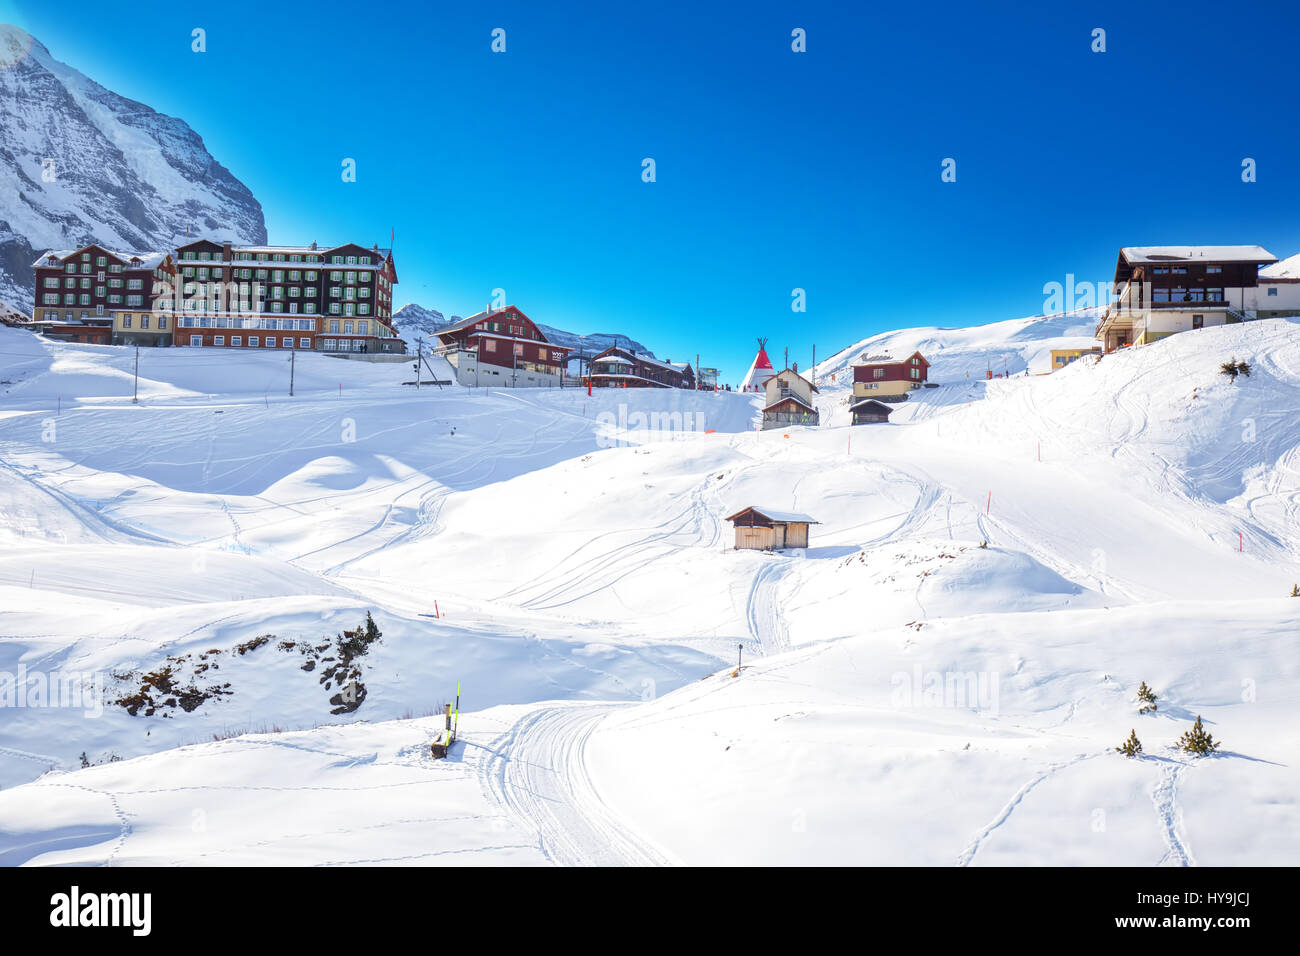 Swiss Ski resort con Eiger, Monch e Jungfrau picchi nelle Alpi svizzere, Grindelwald, Svizzera Foto Stock